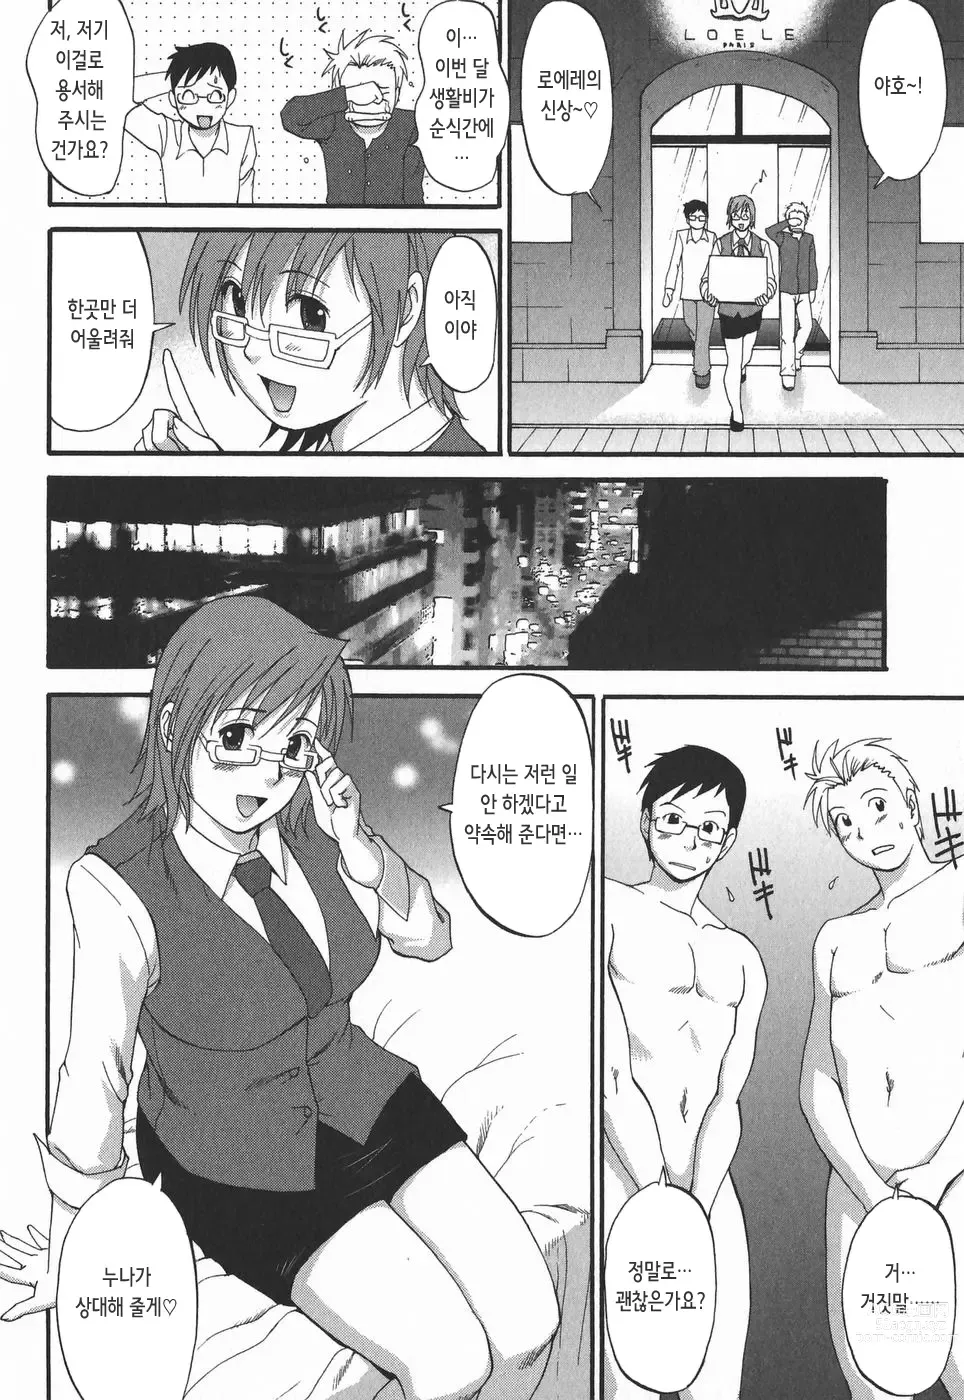 Page 183 of doujinshi 하나 씨의 휴일 2